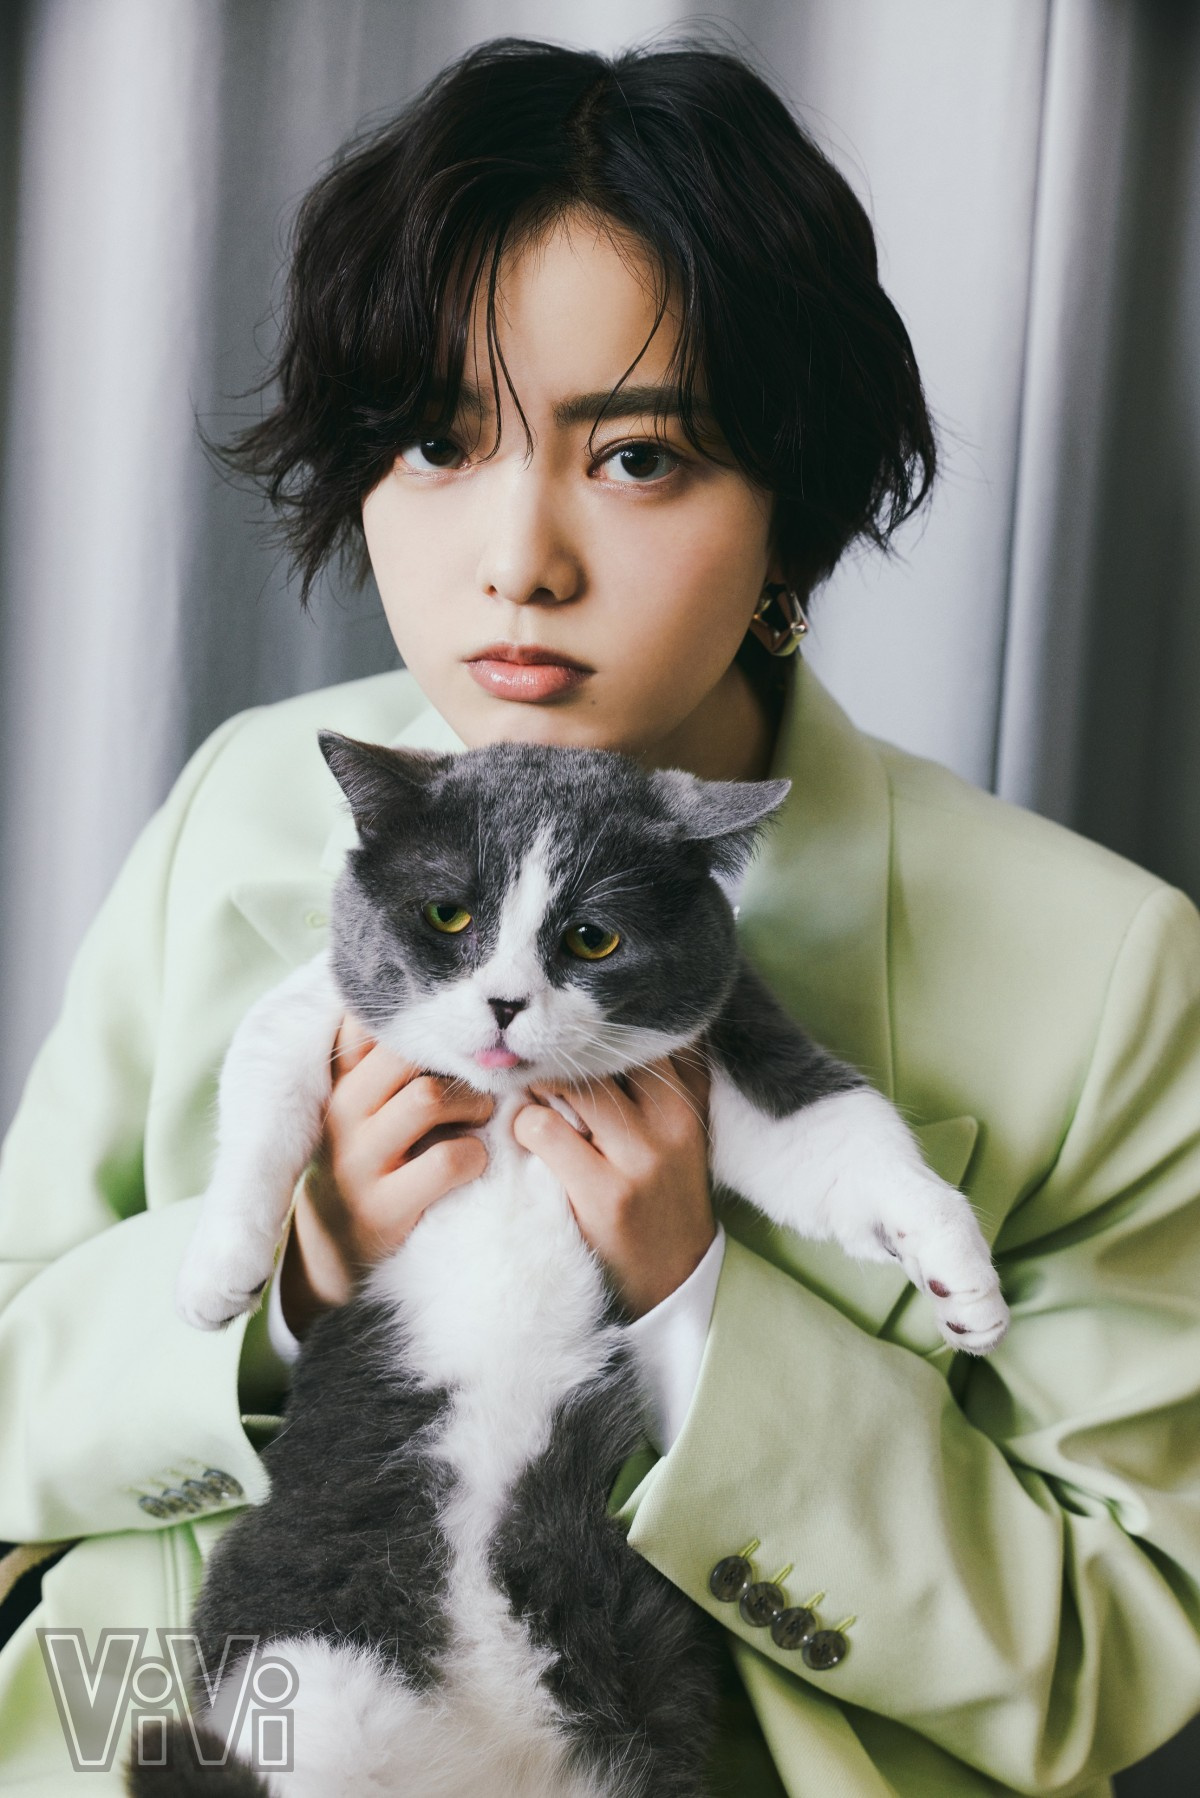 平手友梨奈と猫 尊すぎる2ショット 撮影の合間には猫じゃらしで遊ぶ Oricon News